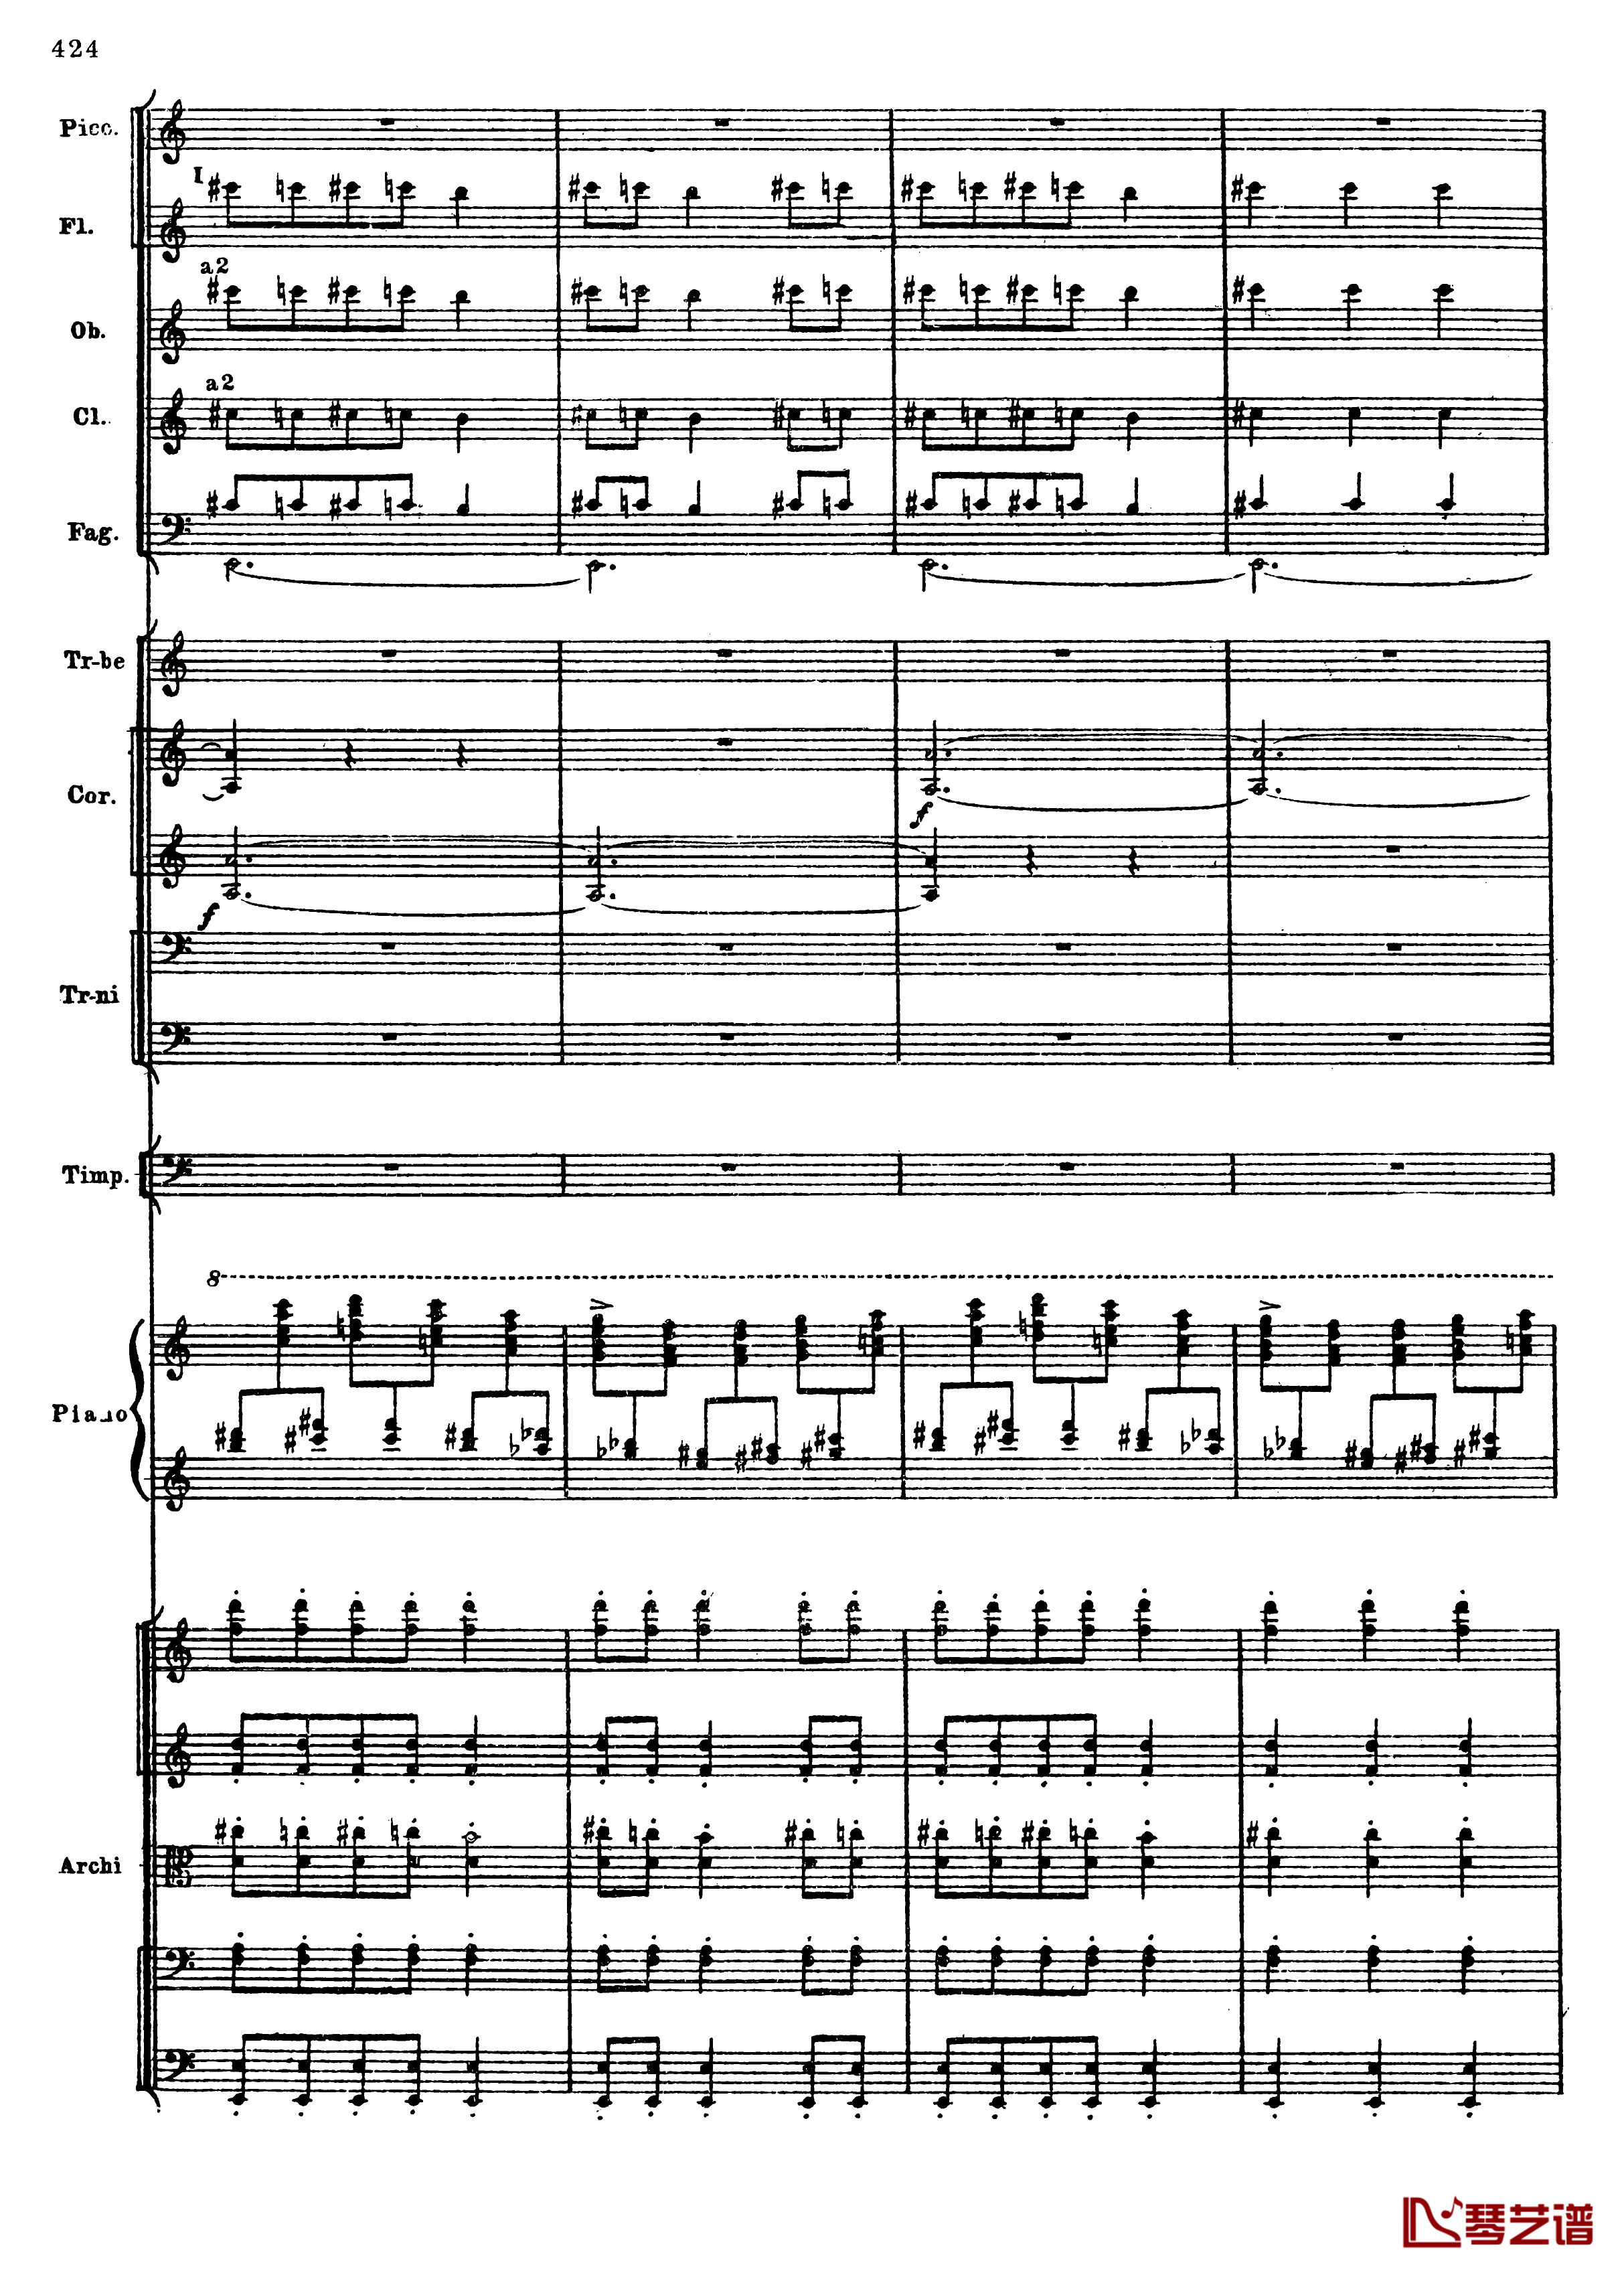 普罗科菲耶夫第三钢琴协奏曲钢琴谱-总谱-普罗科非耶夫156